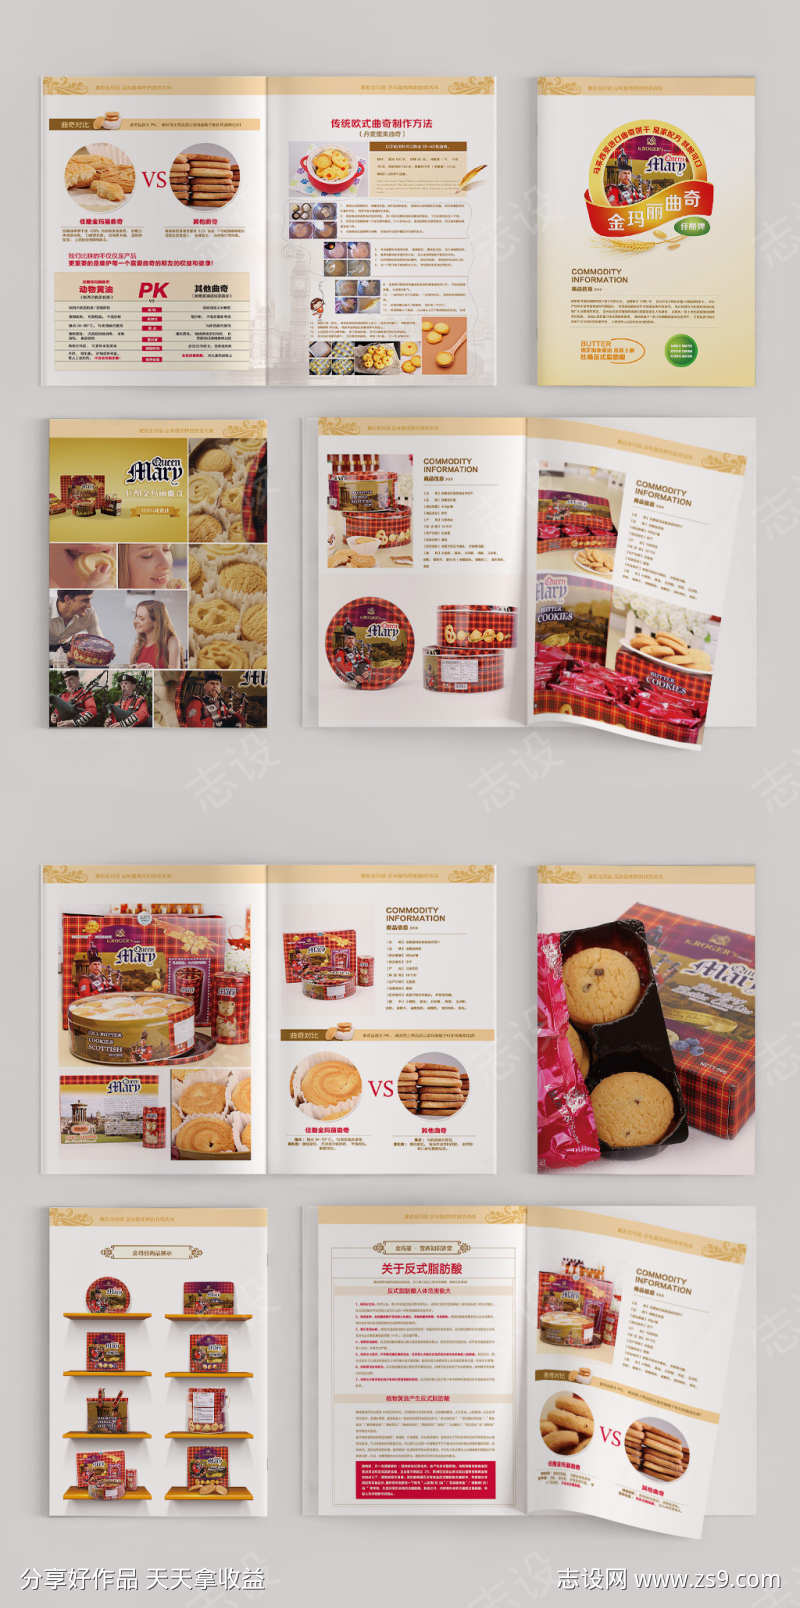 马来西亚曲奇饼干产品画册